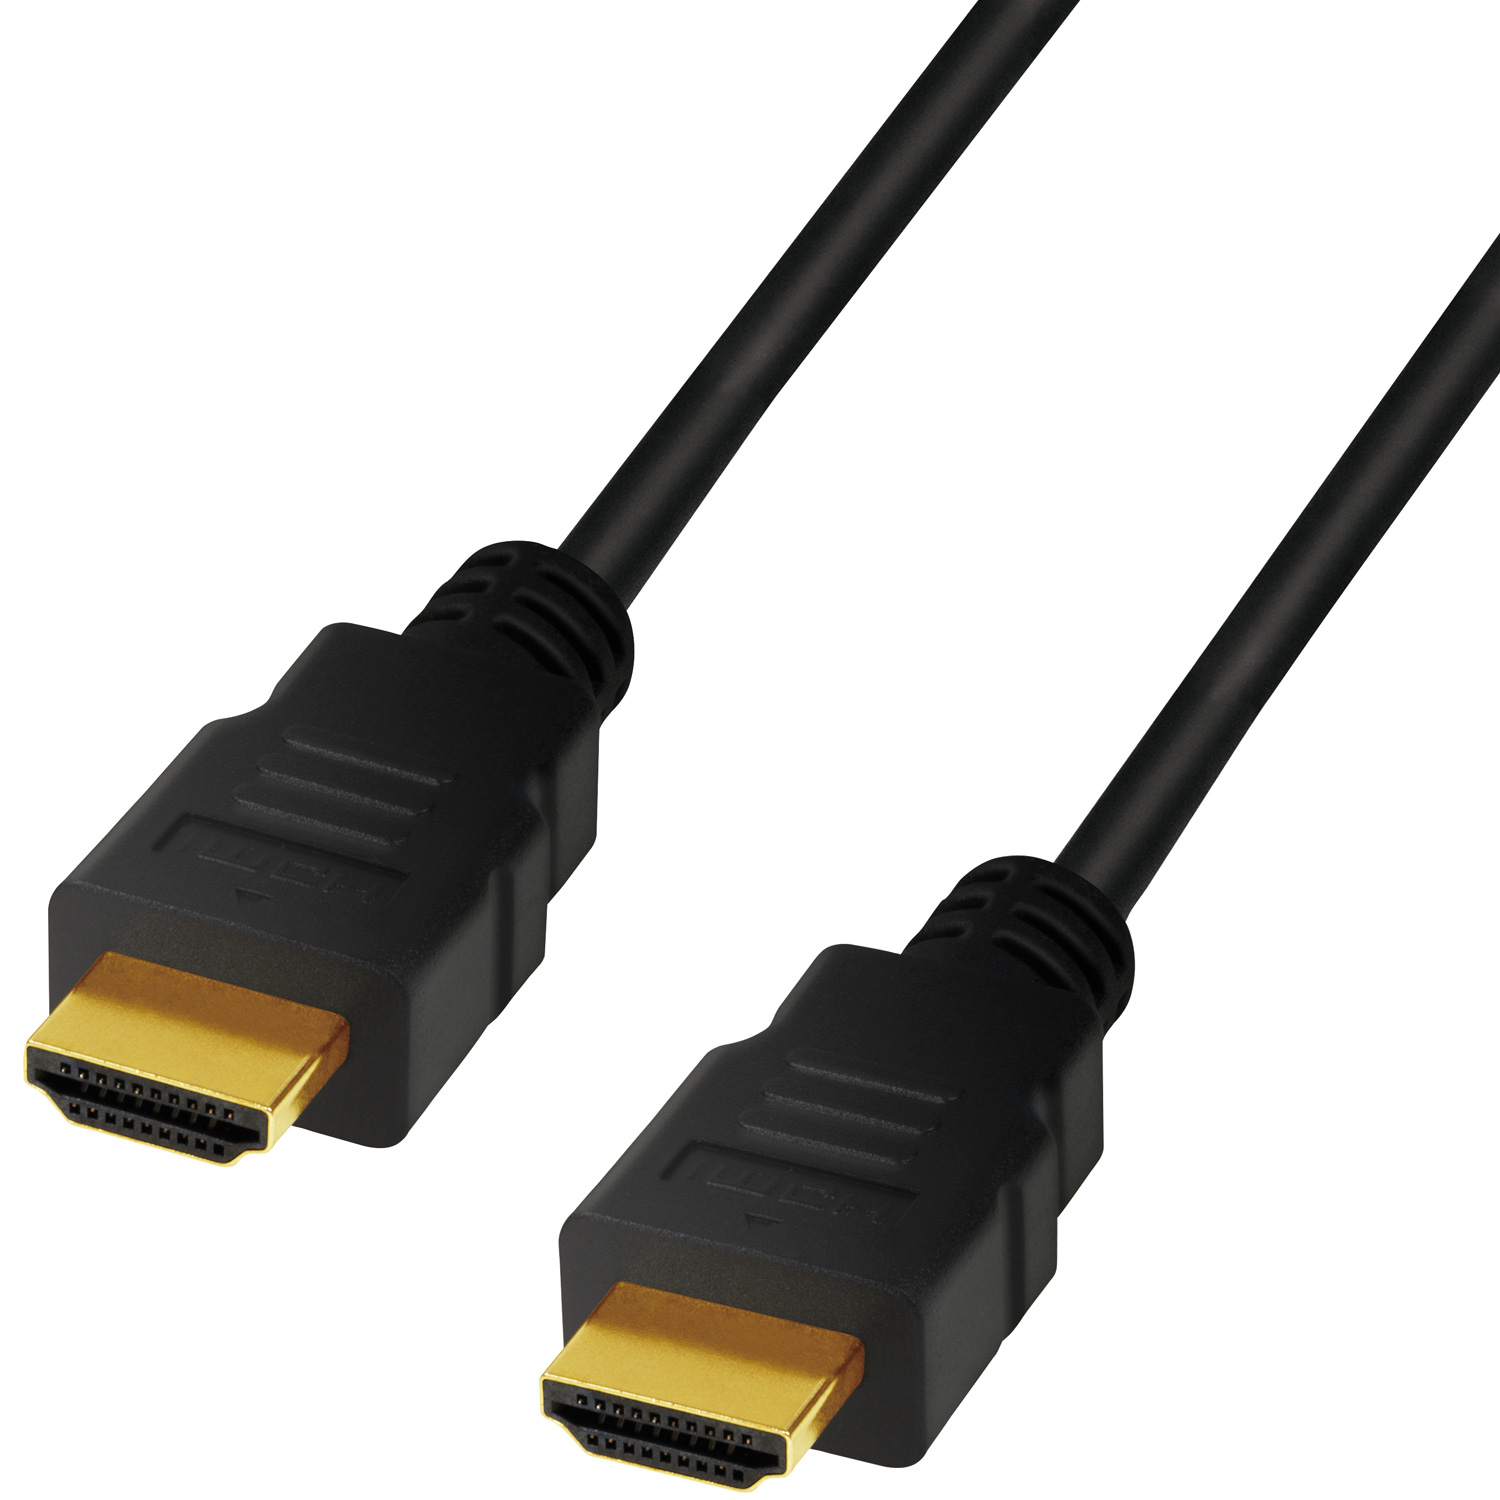 LOGILINK HDMI-Kabel HDMI-Kabel Speed 8K/60 4K/120Hz Ultra 2m High